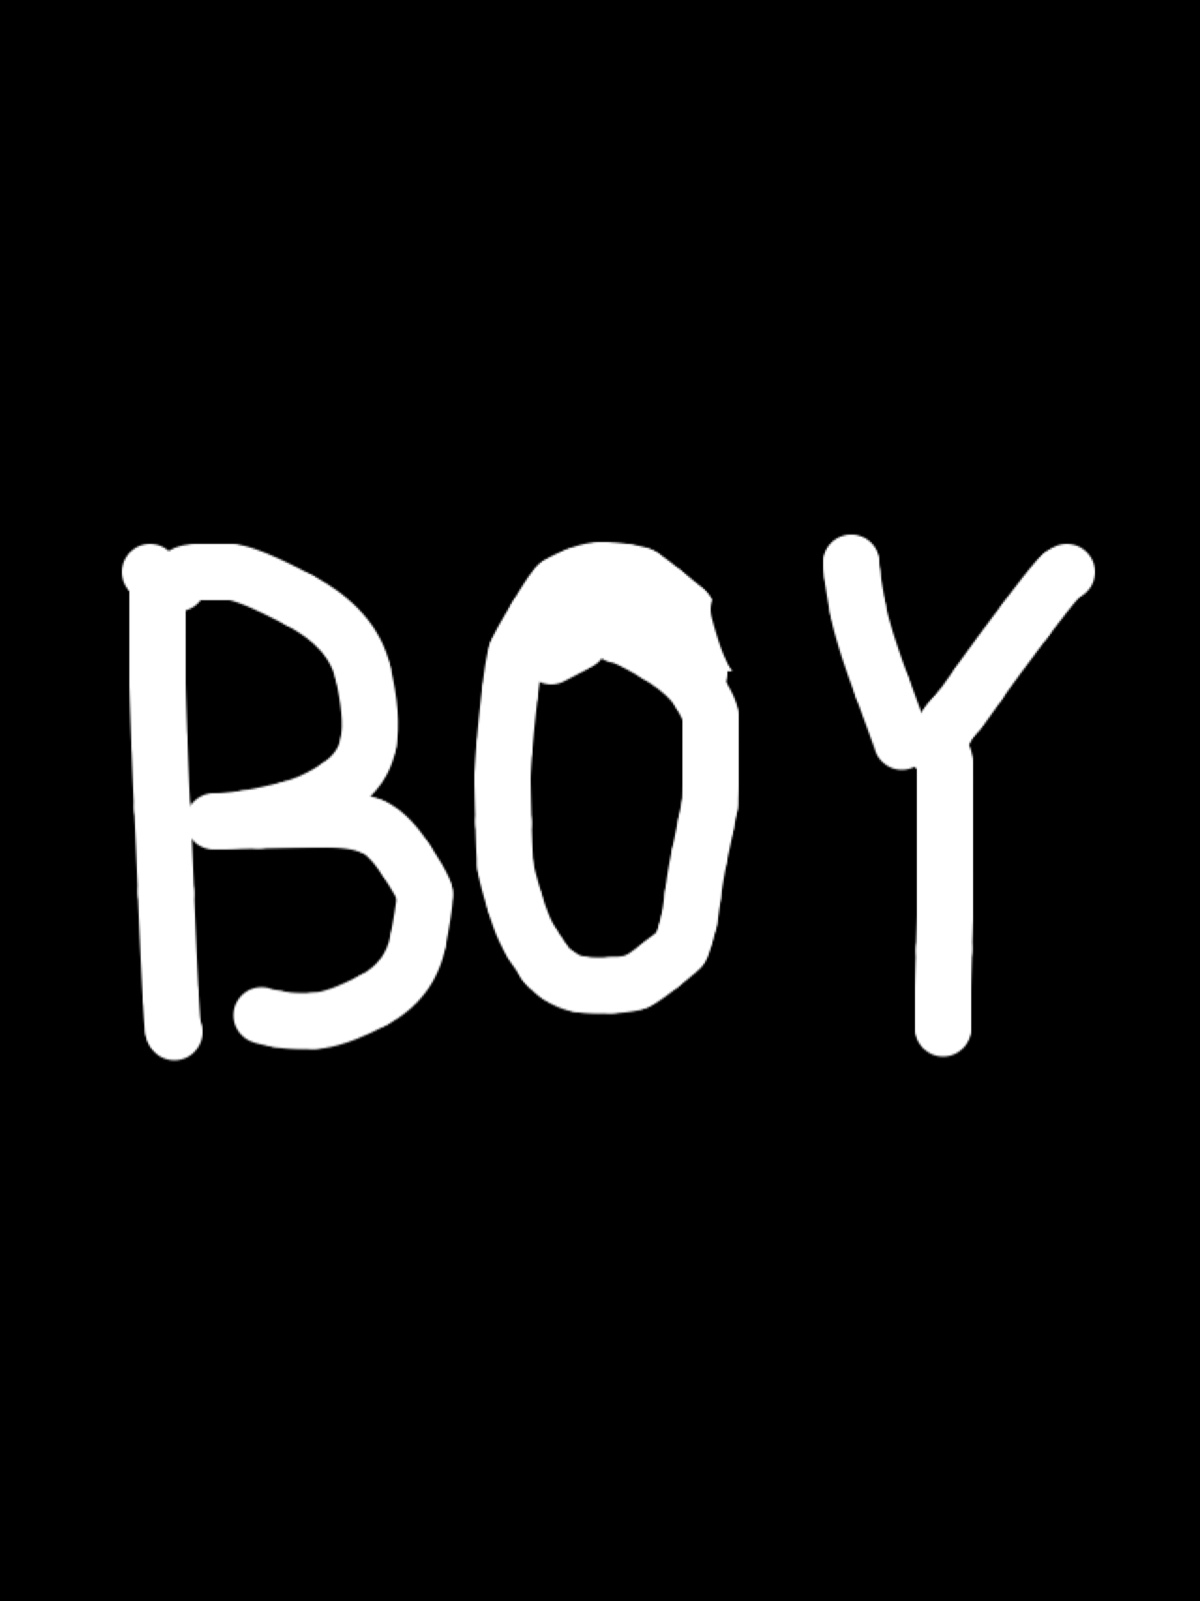 boy